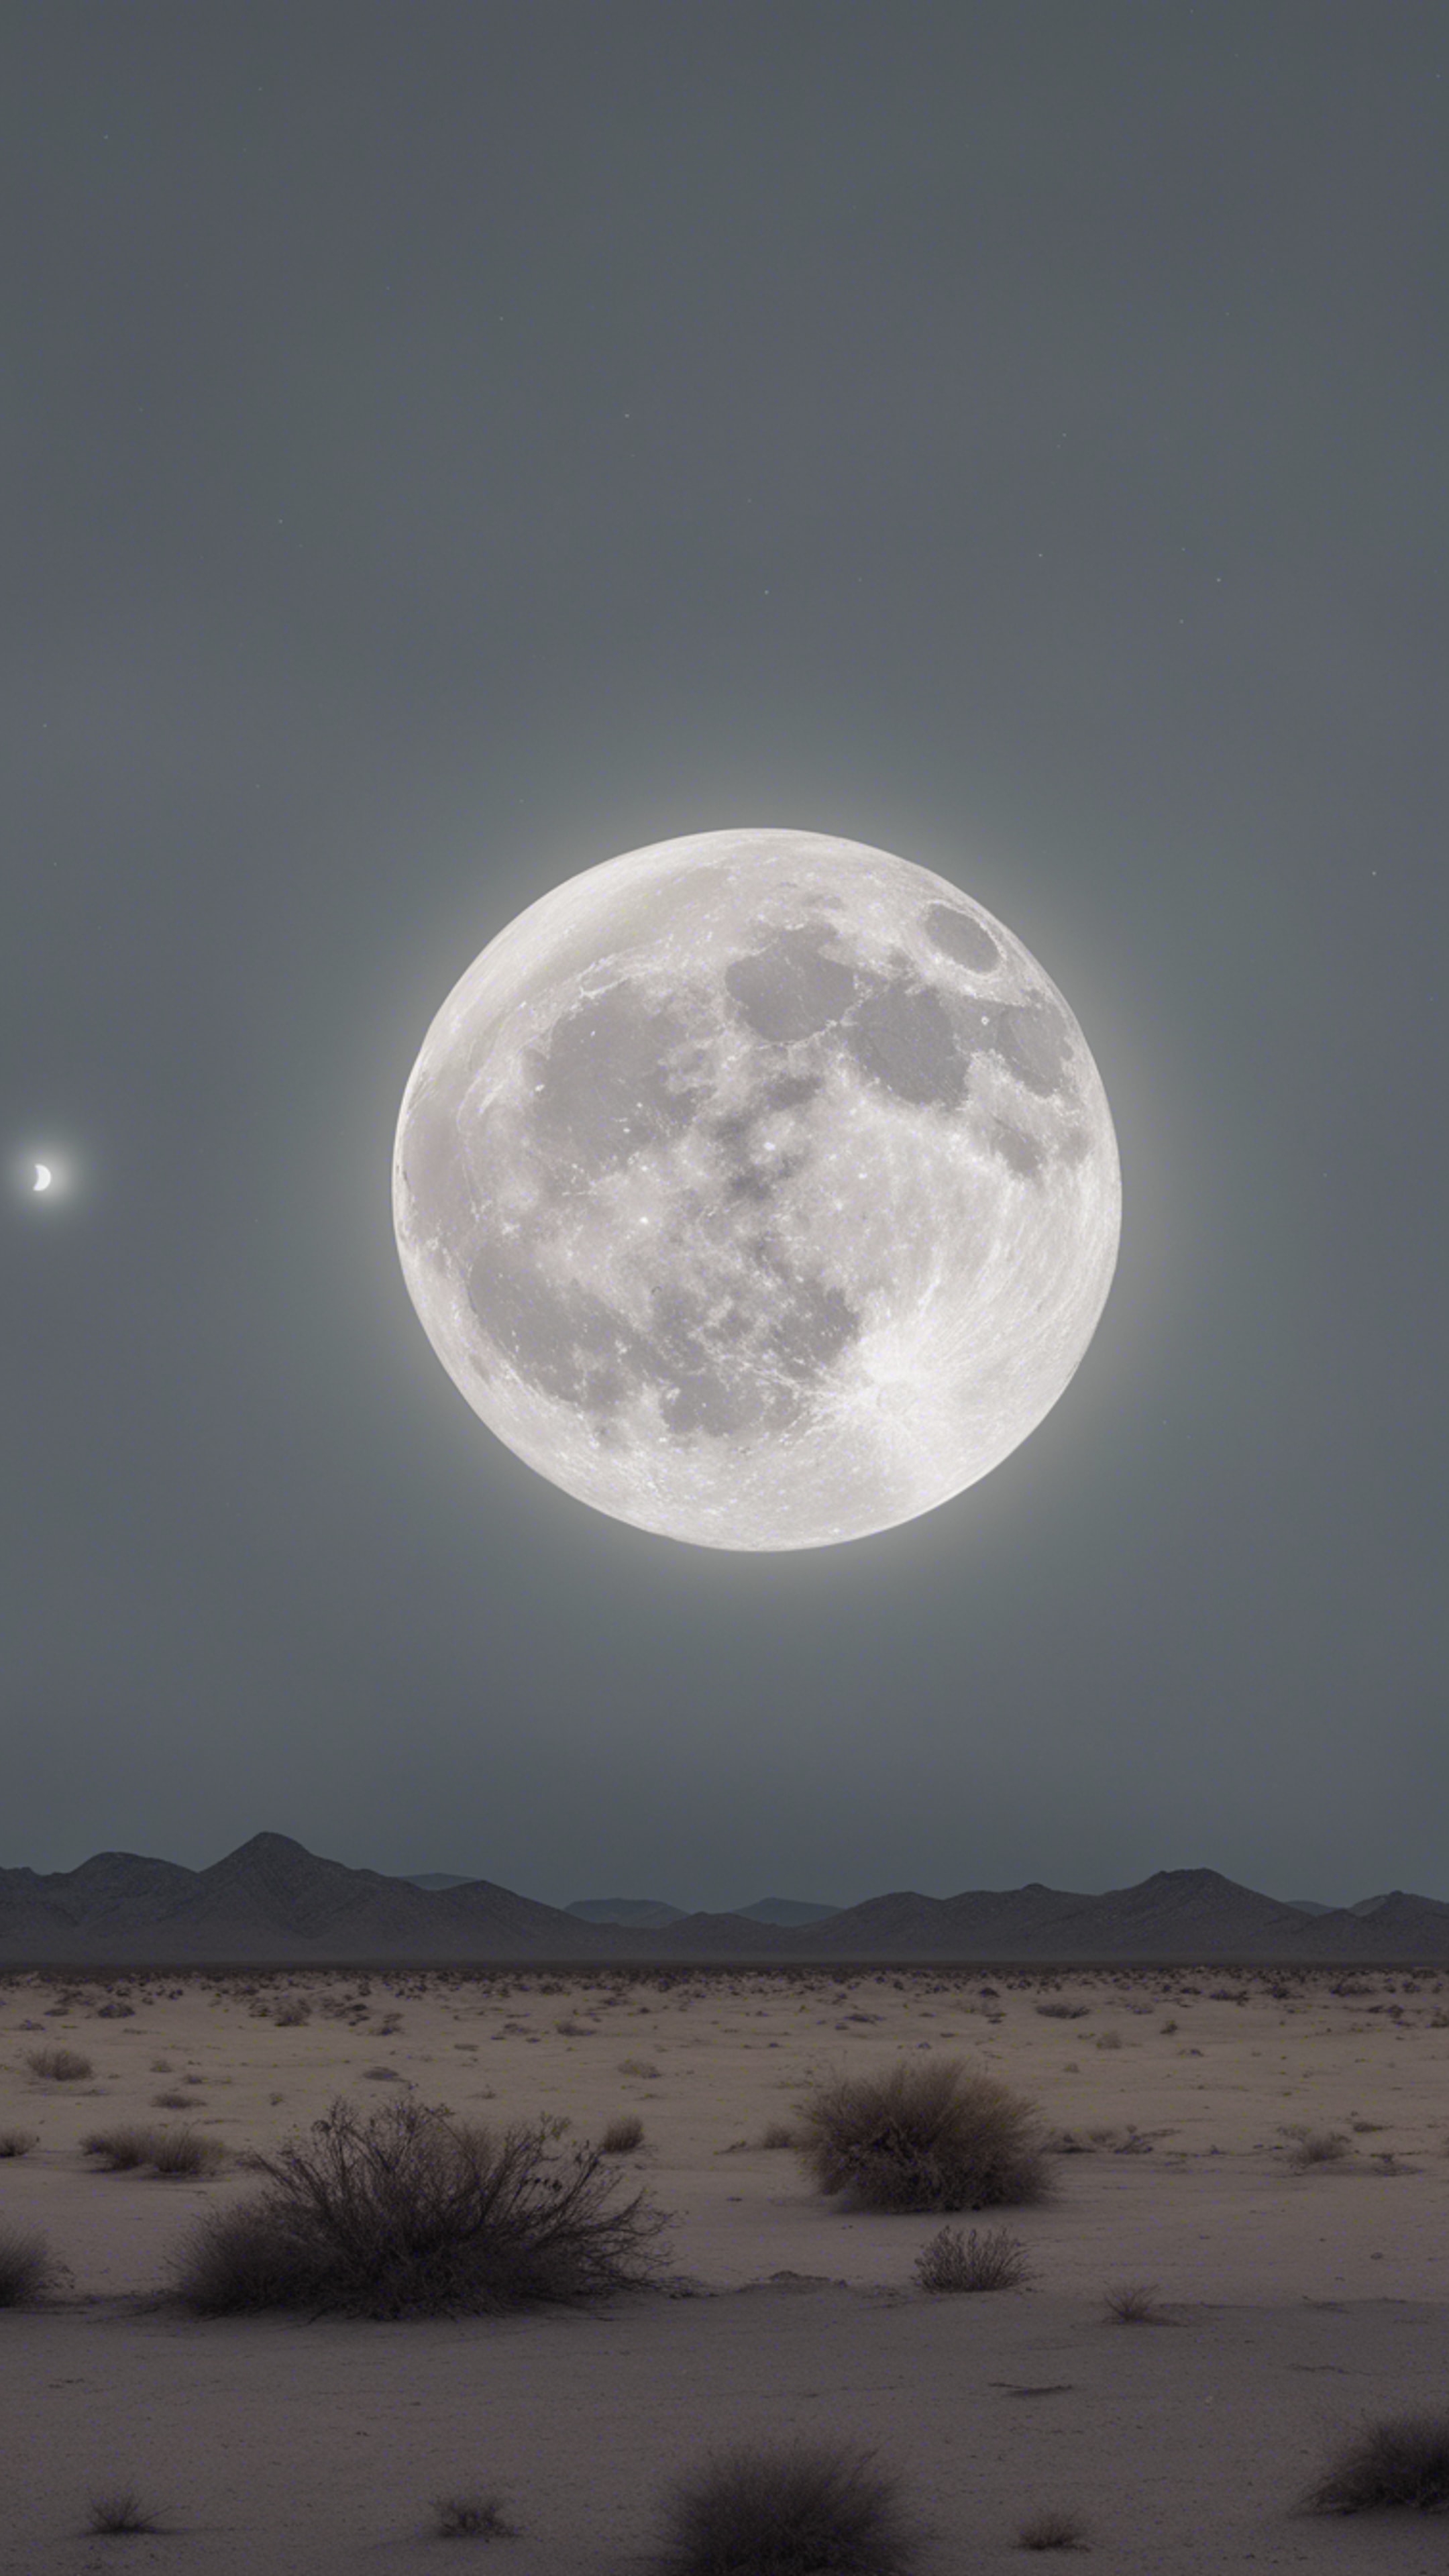 An eerie full moon casting a light gray hue over a desolate desert landscape. Fondo de pantalla[b219b4d700dc4cdd8b88]